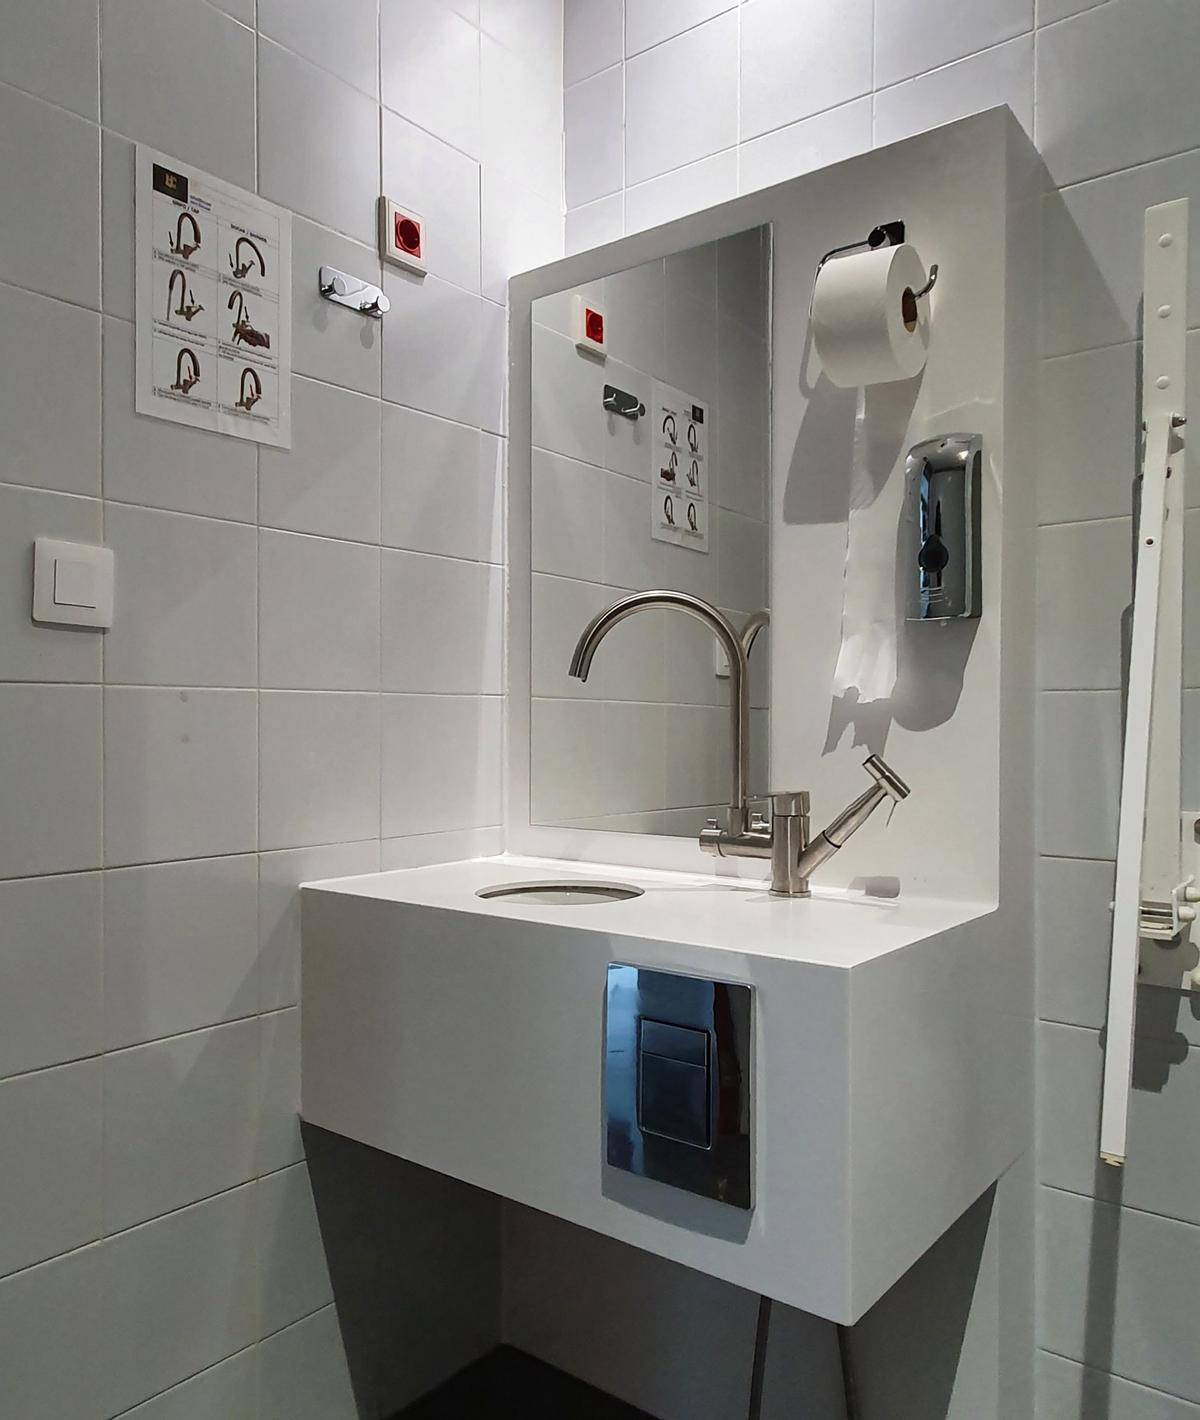 Imagen del baño instalado en el centro hospitalario.